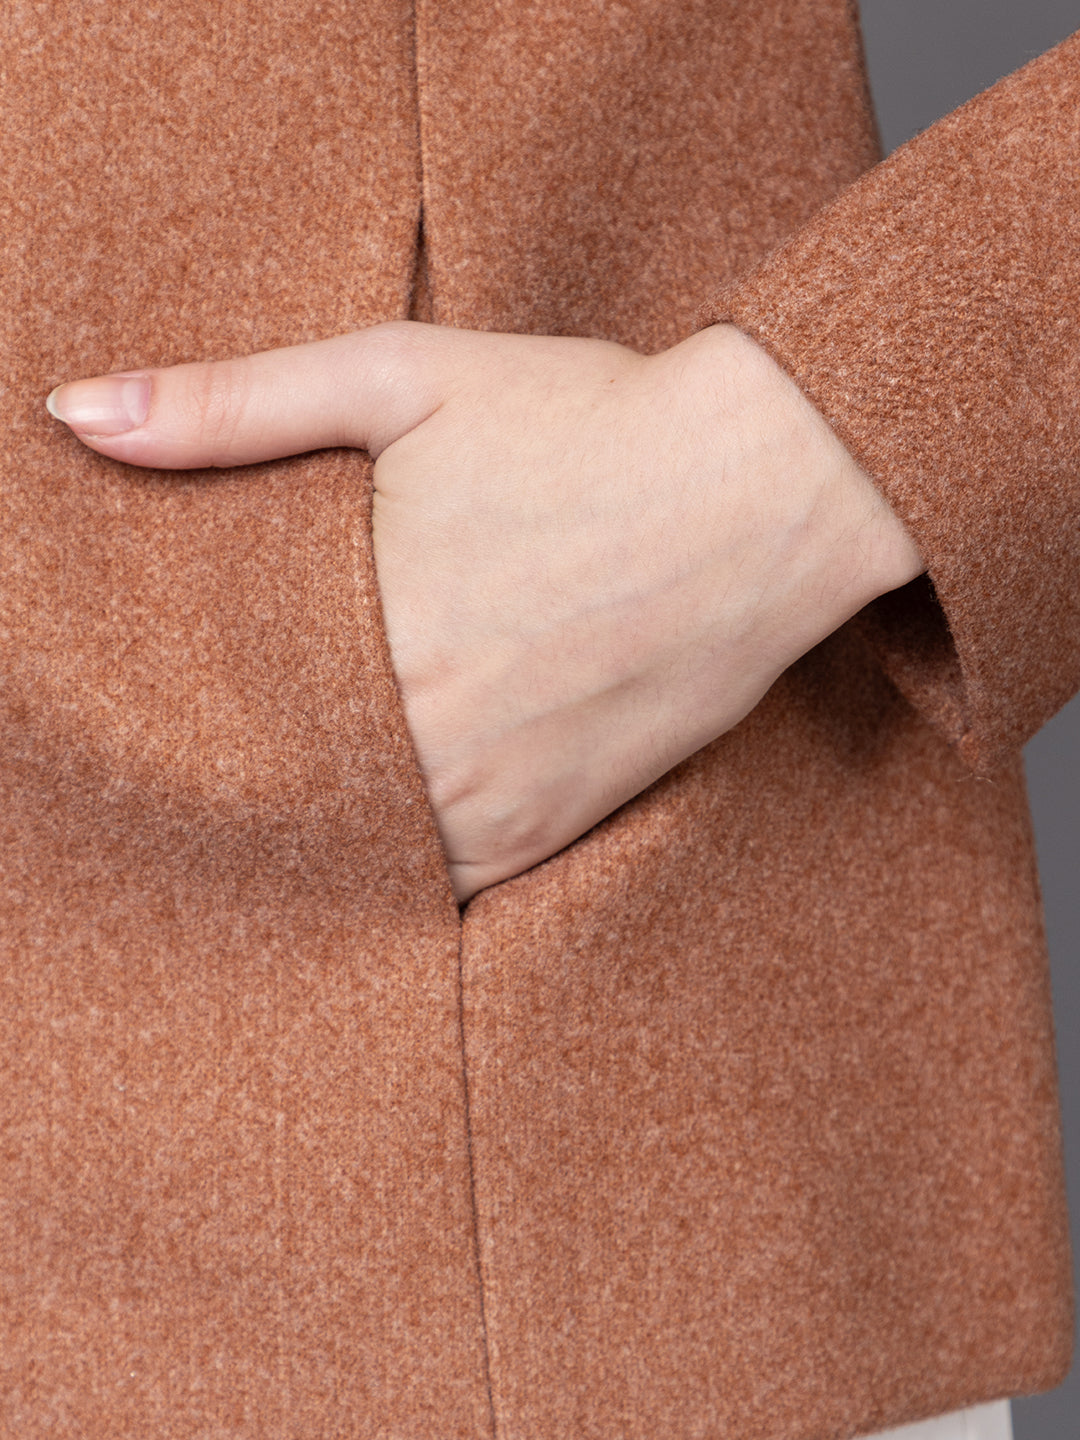 Women Single Breasted Woolen Stylish Overcoat